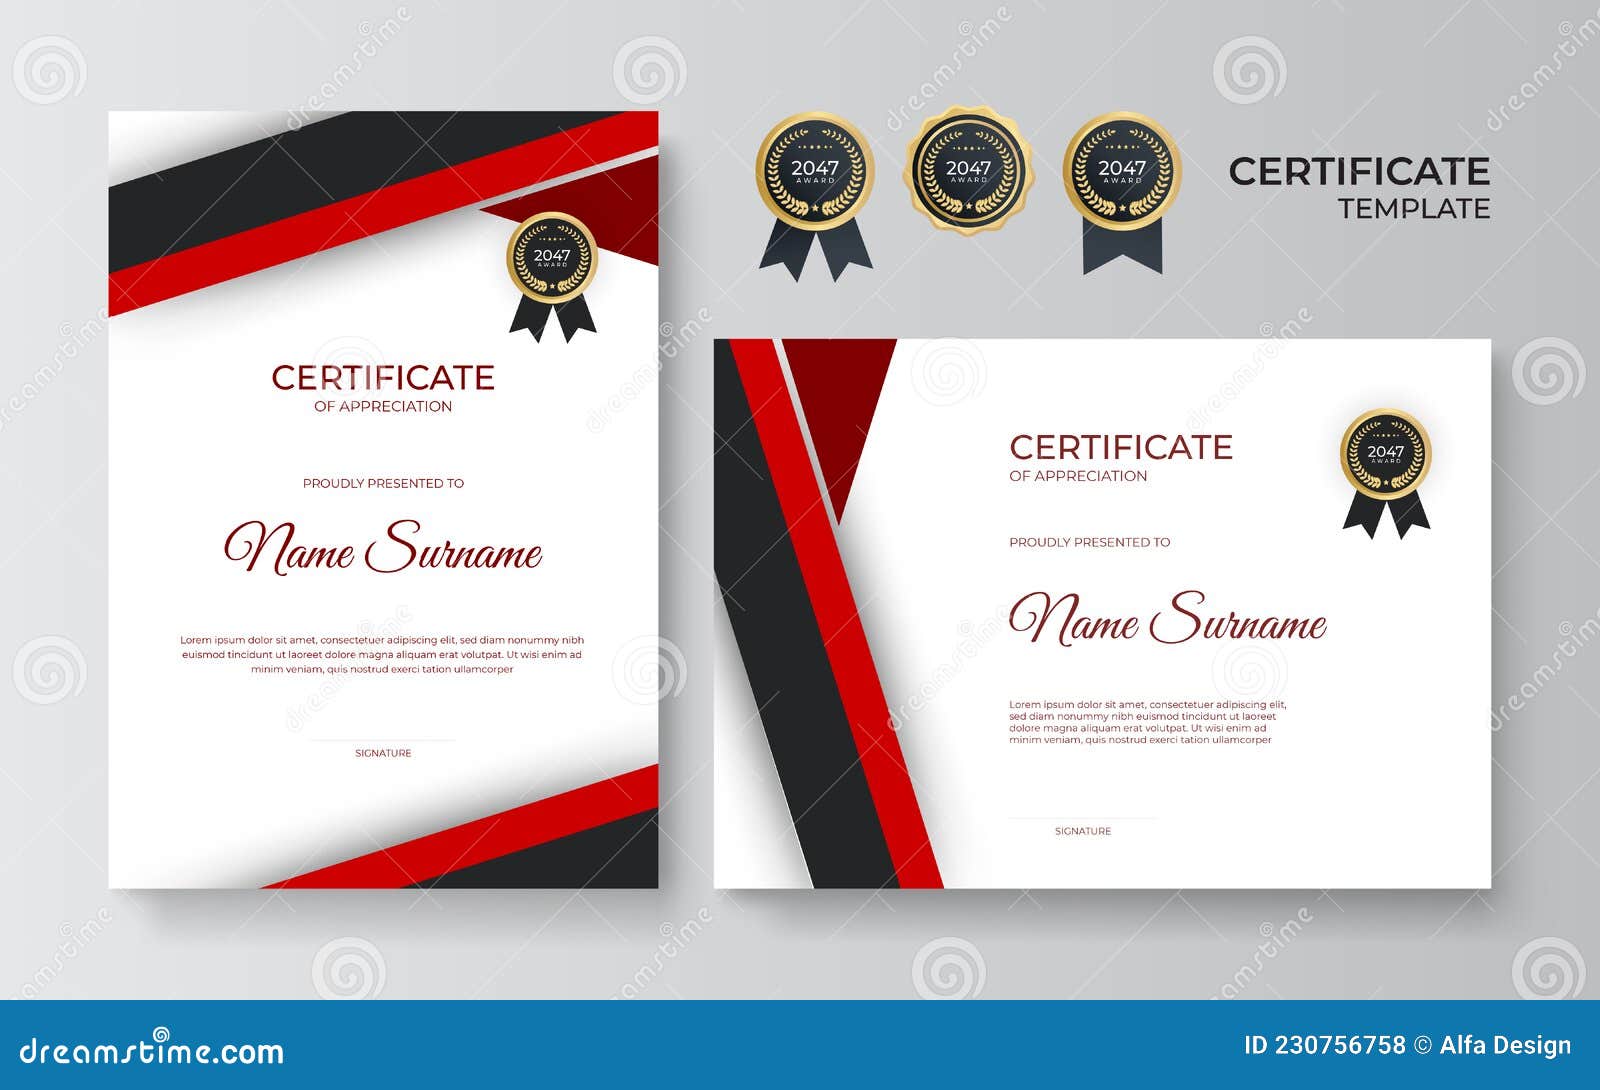 Modern Red Black Certificate. Certificate of Appreciation Template, Red ...